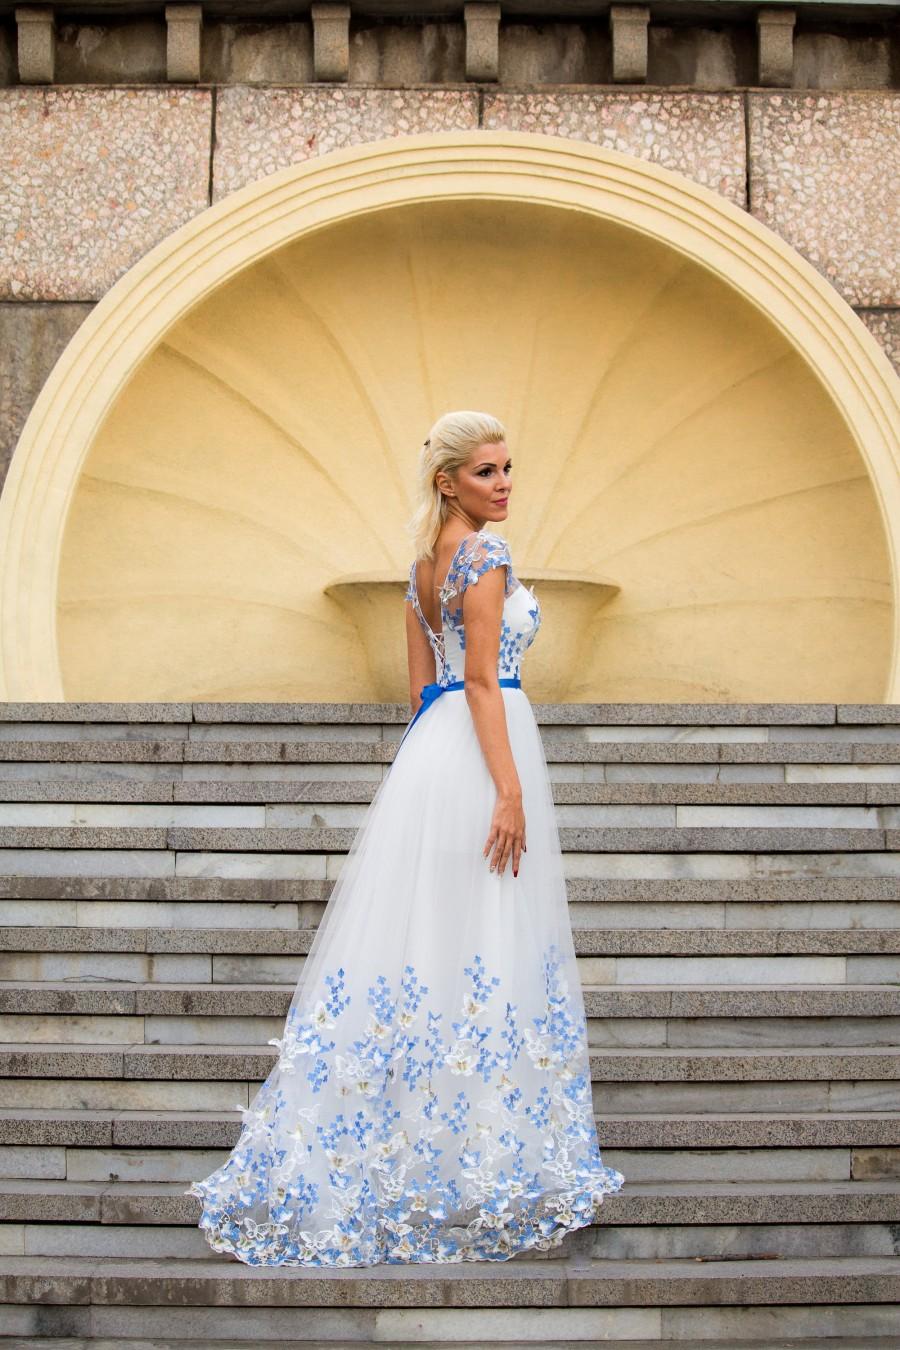 زفاف - White and Blue Wedding dress, Color wedding dress with butterflies, Modest wedding dress gown, White bridal gown Fairy wedding dress in blue